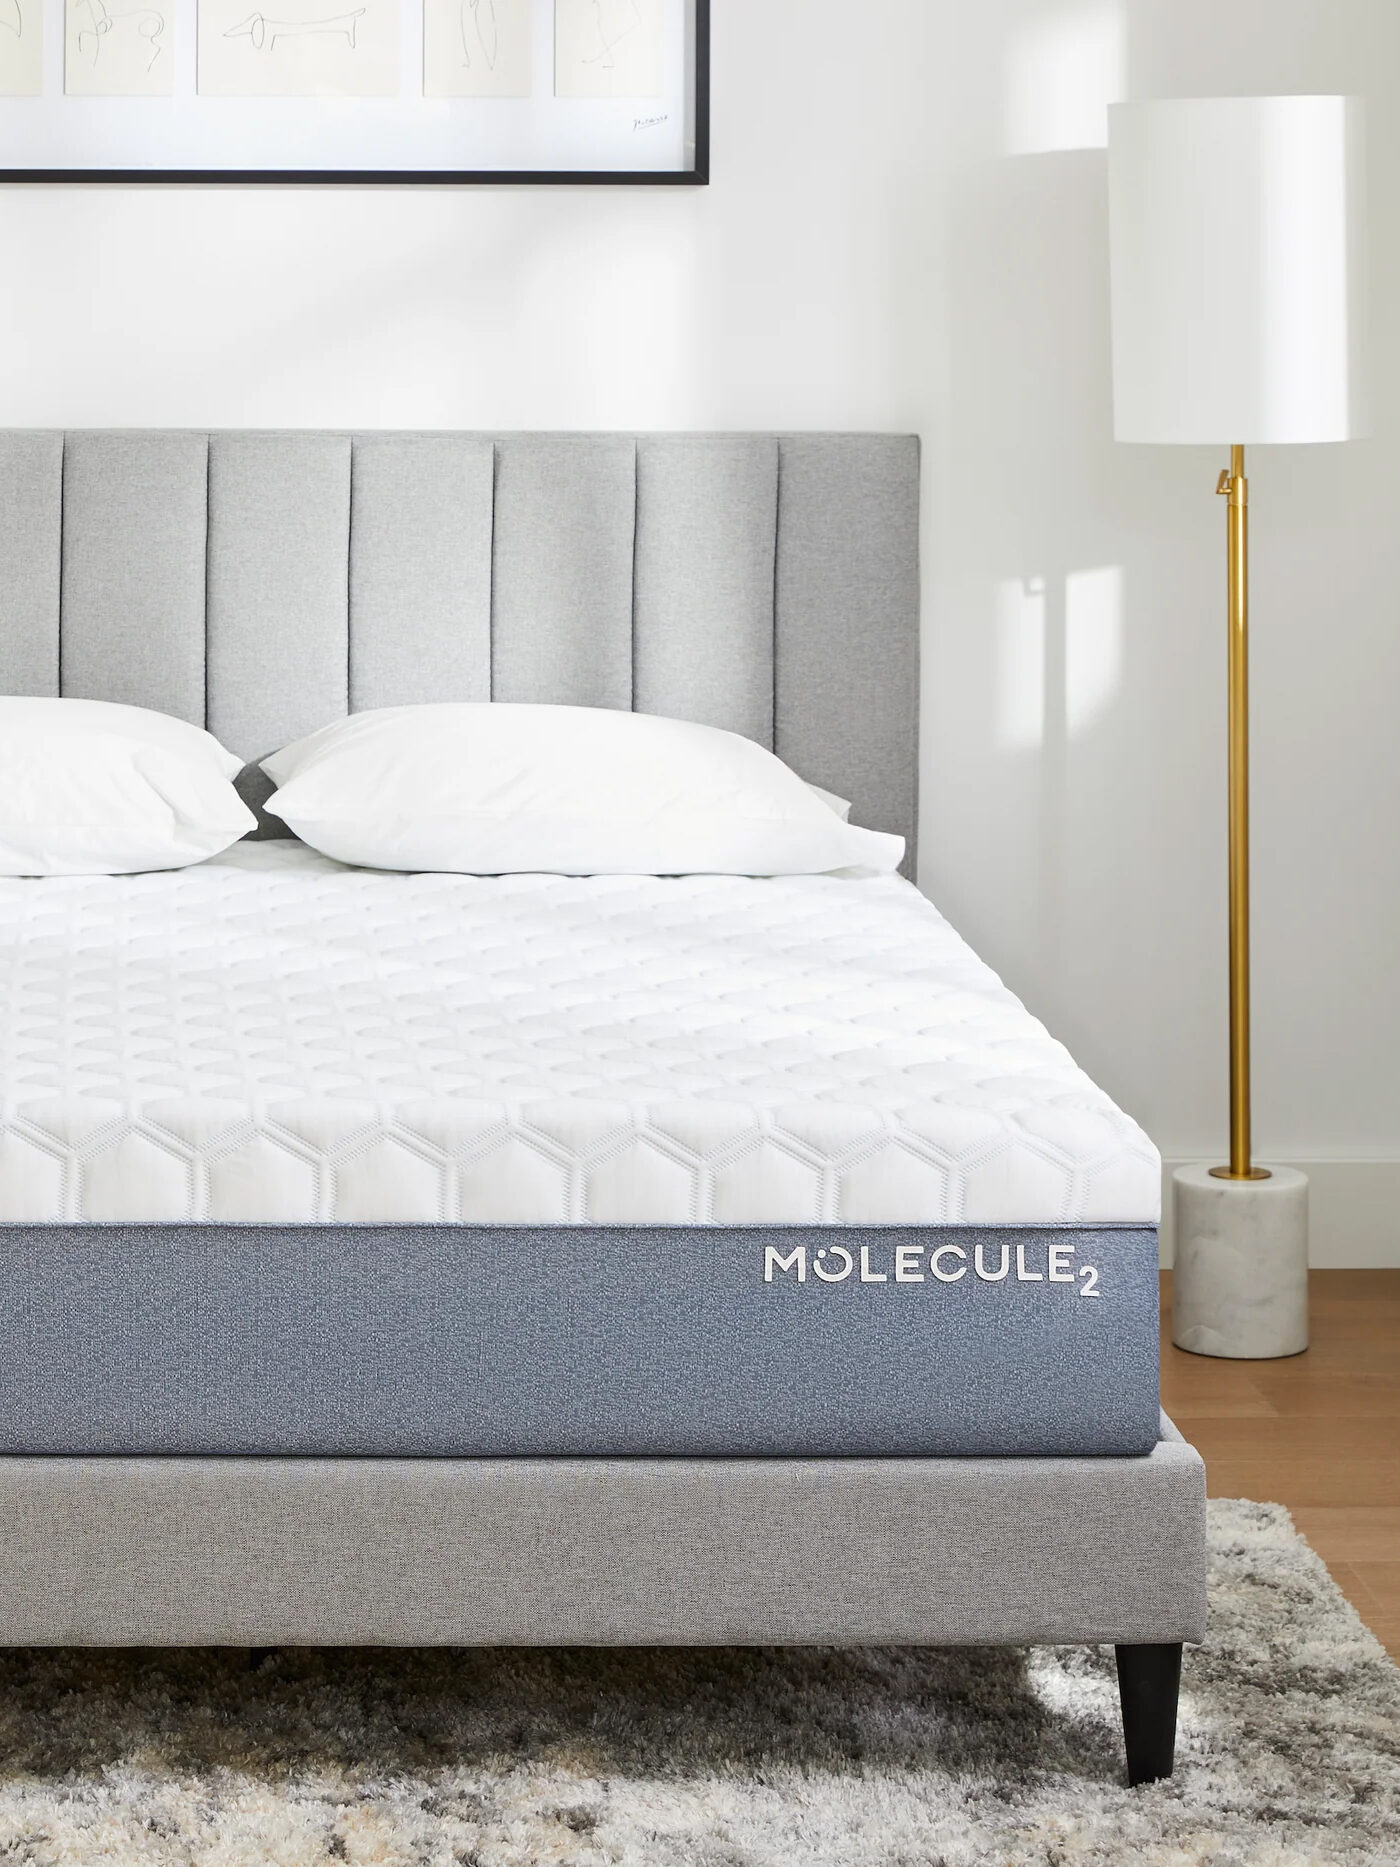 A Molecule Sleep mattress